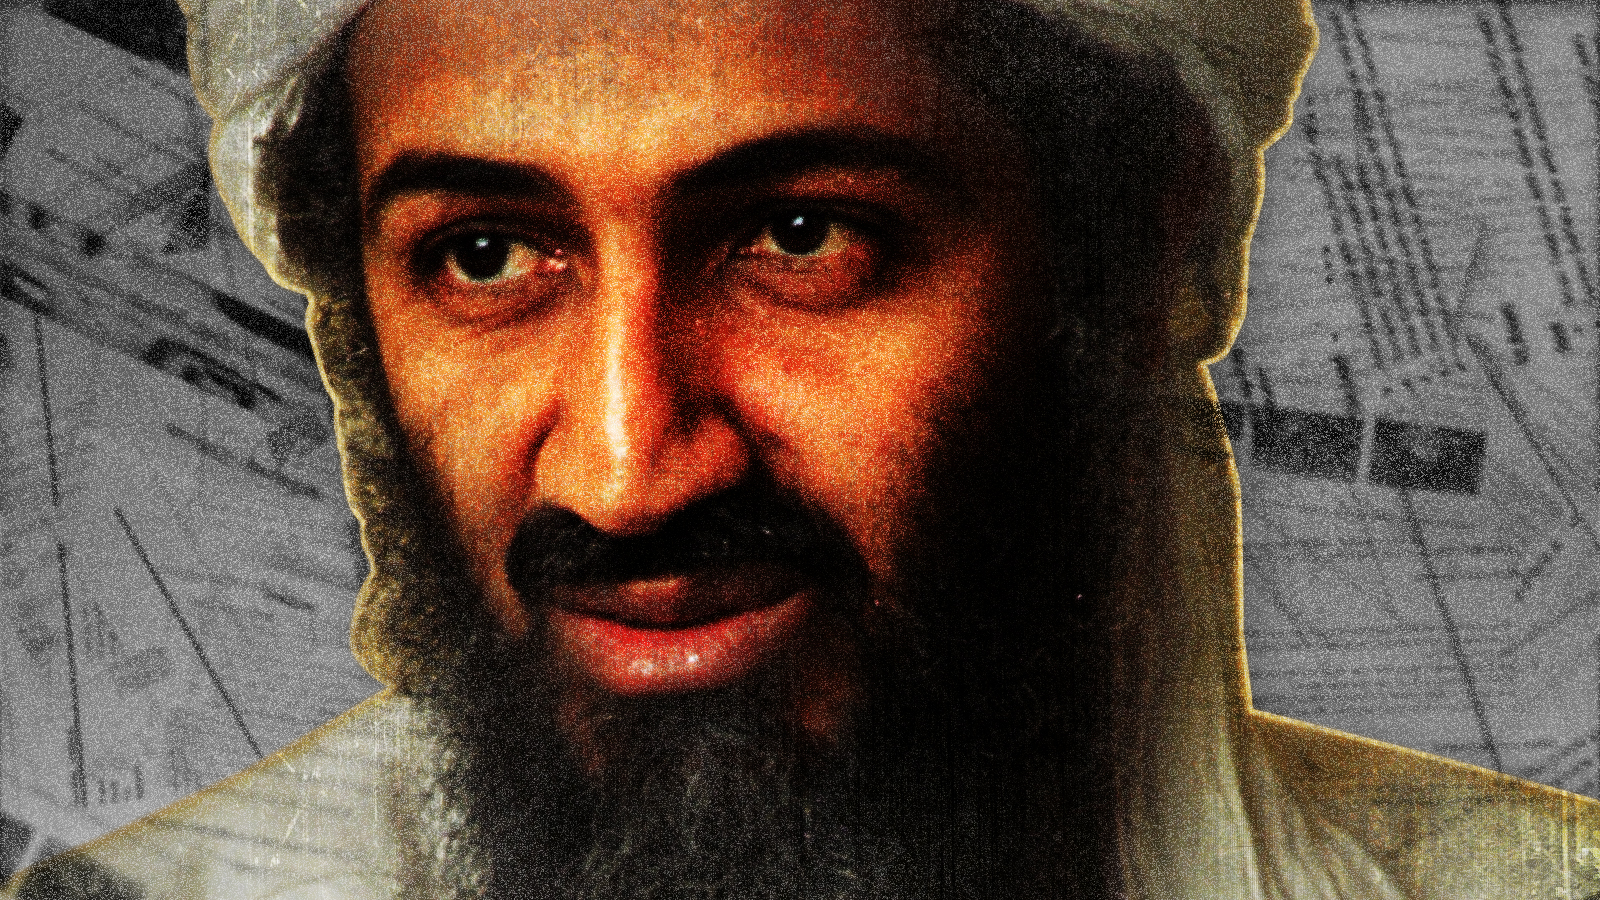 Osama bin Laden cometió un error garrafal con el 11S